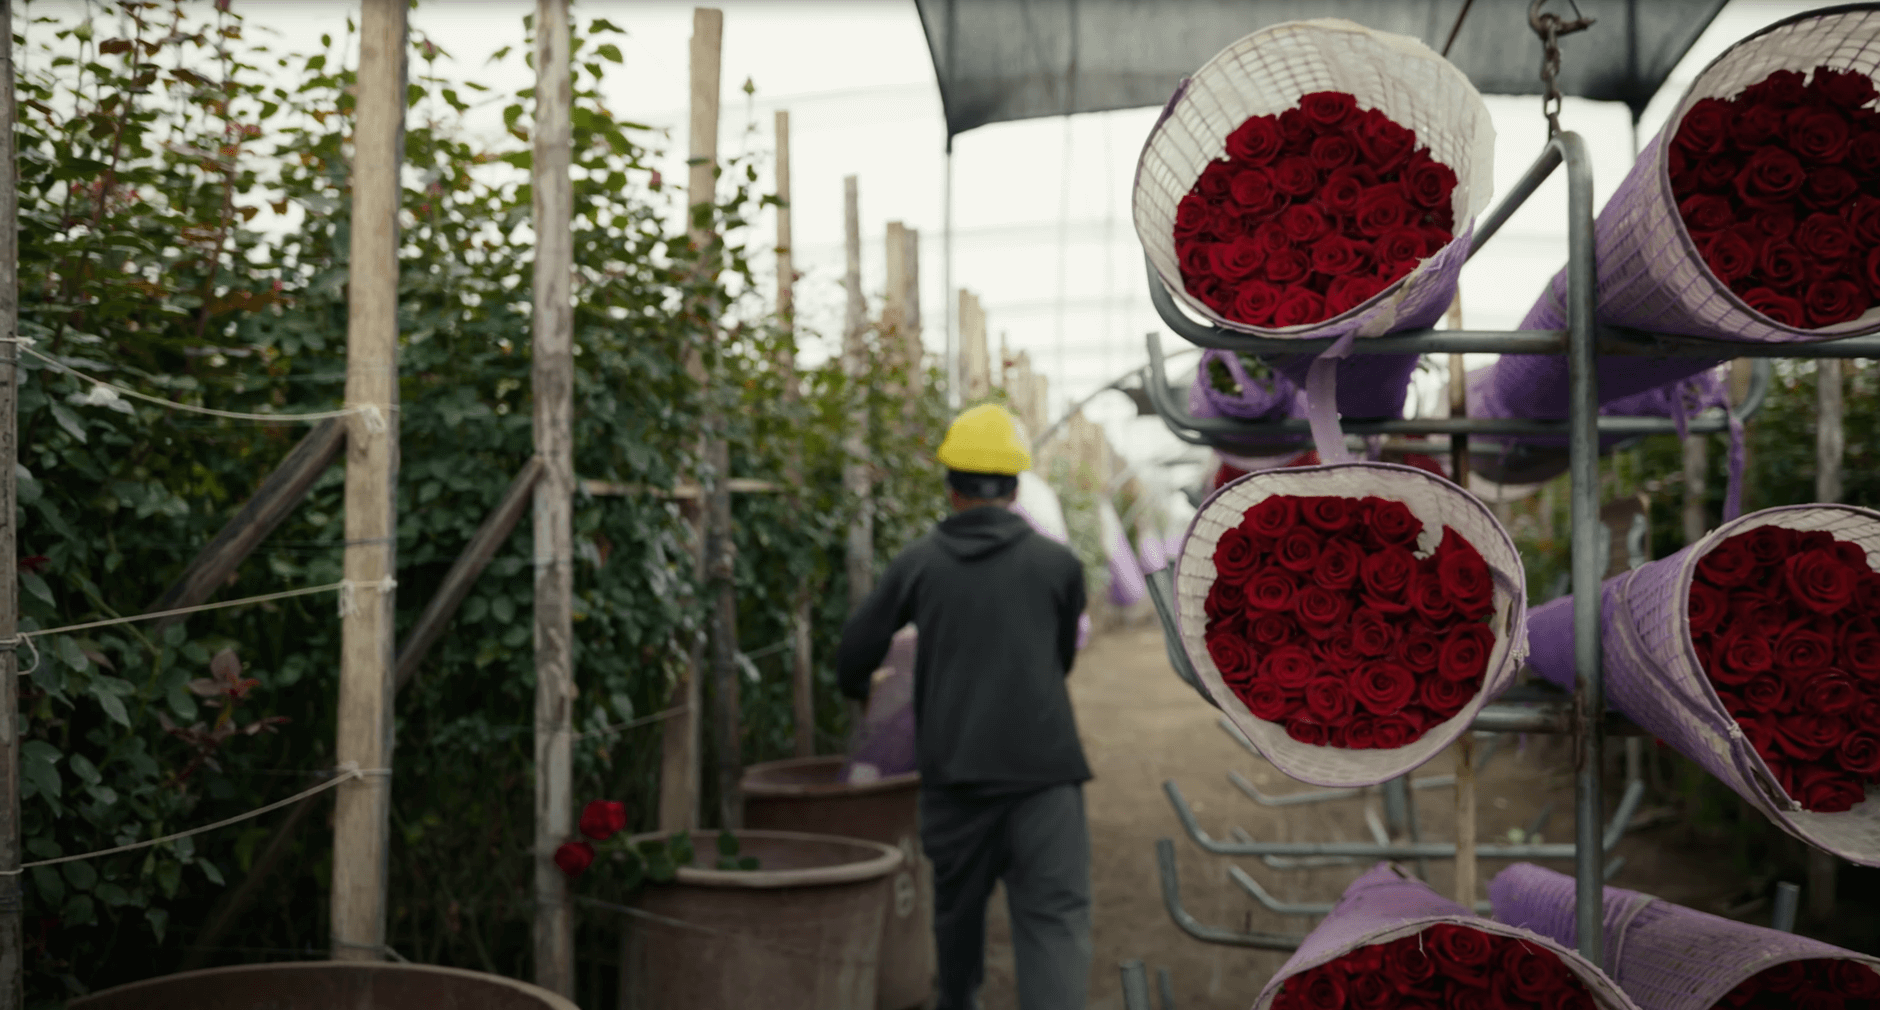 Плантация Star Roses: обзор крупного производителя эксклюзивных цветов из Эквадора